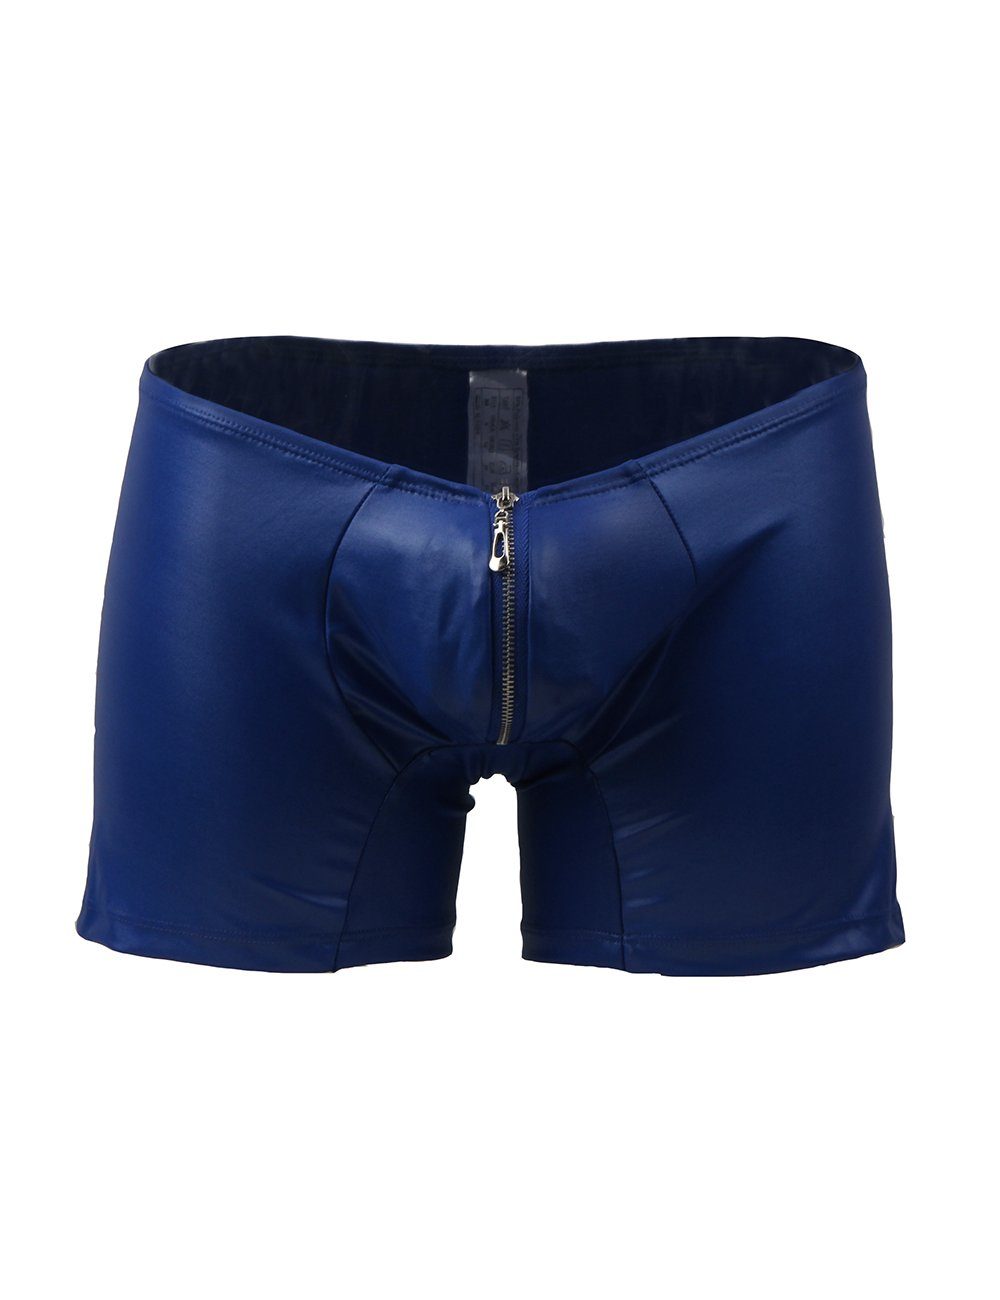 Hose Wetlook Boxershorts Lau-Fashion Unterwäsche Boxer S/M Männer Blau Shorts Zipper Herren Slip